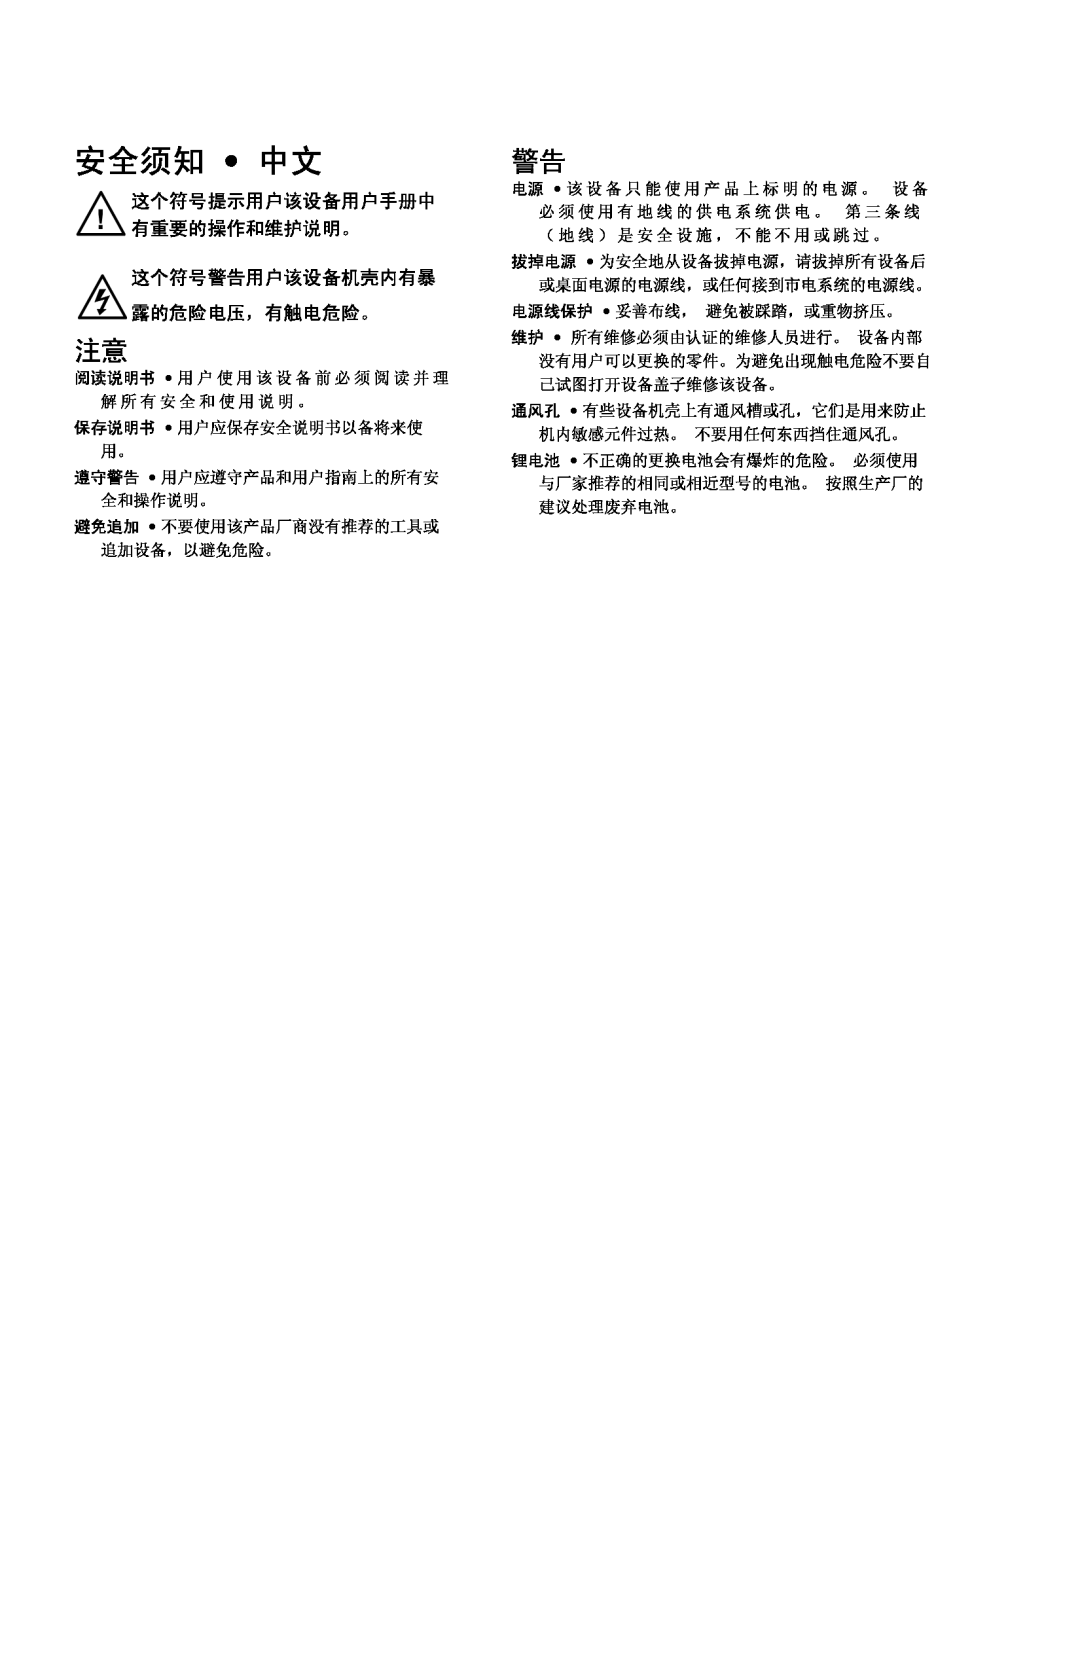 Extron electronic HSA 822 manual 安全须知 中文, 这个符号提示用户该设备用户手册中 有重要的操作和维护说明。 这个符号警告用户该设备机壳内有暴 露的危险电压，有触电危险。 